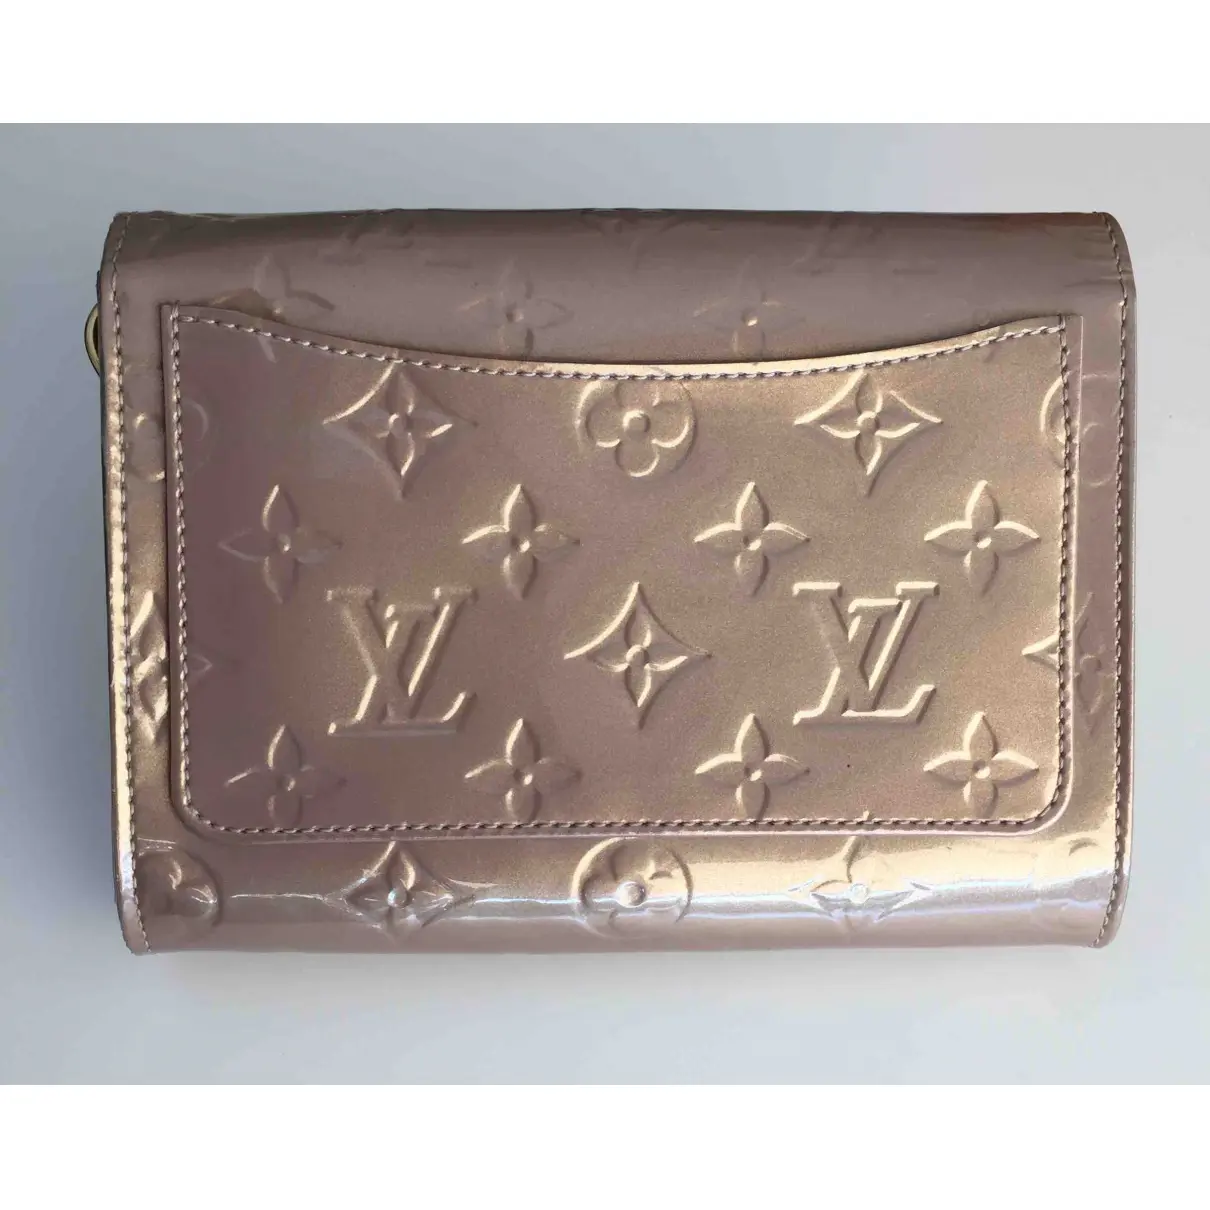 Patent leather handbag Louis Vuitton